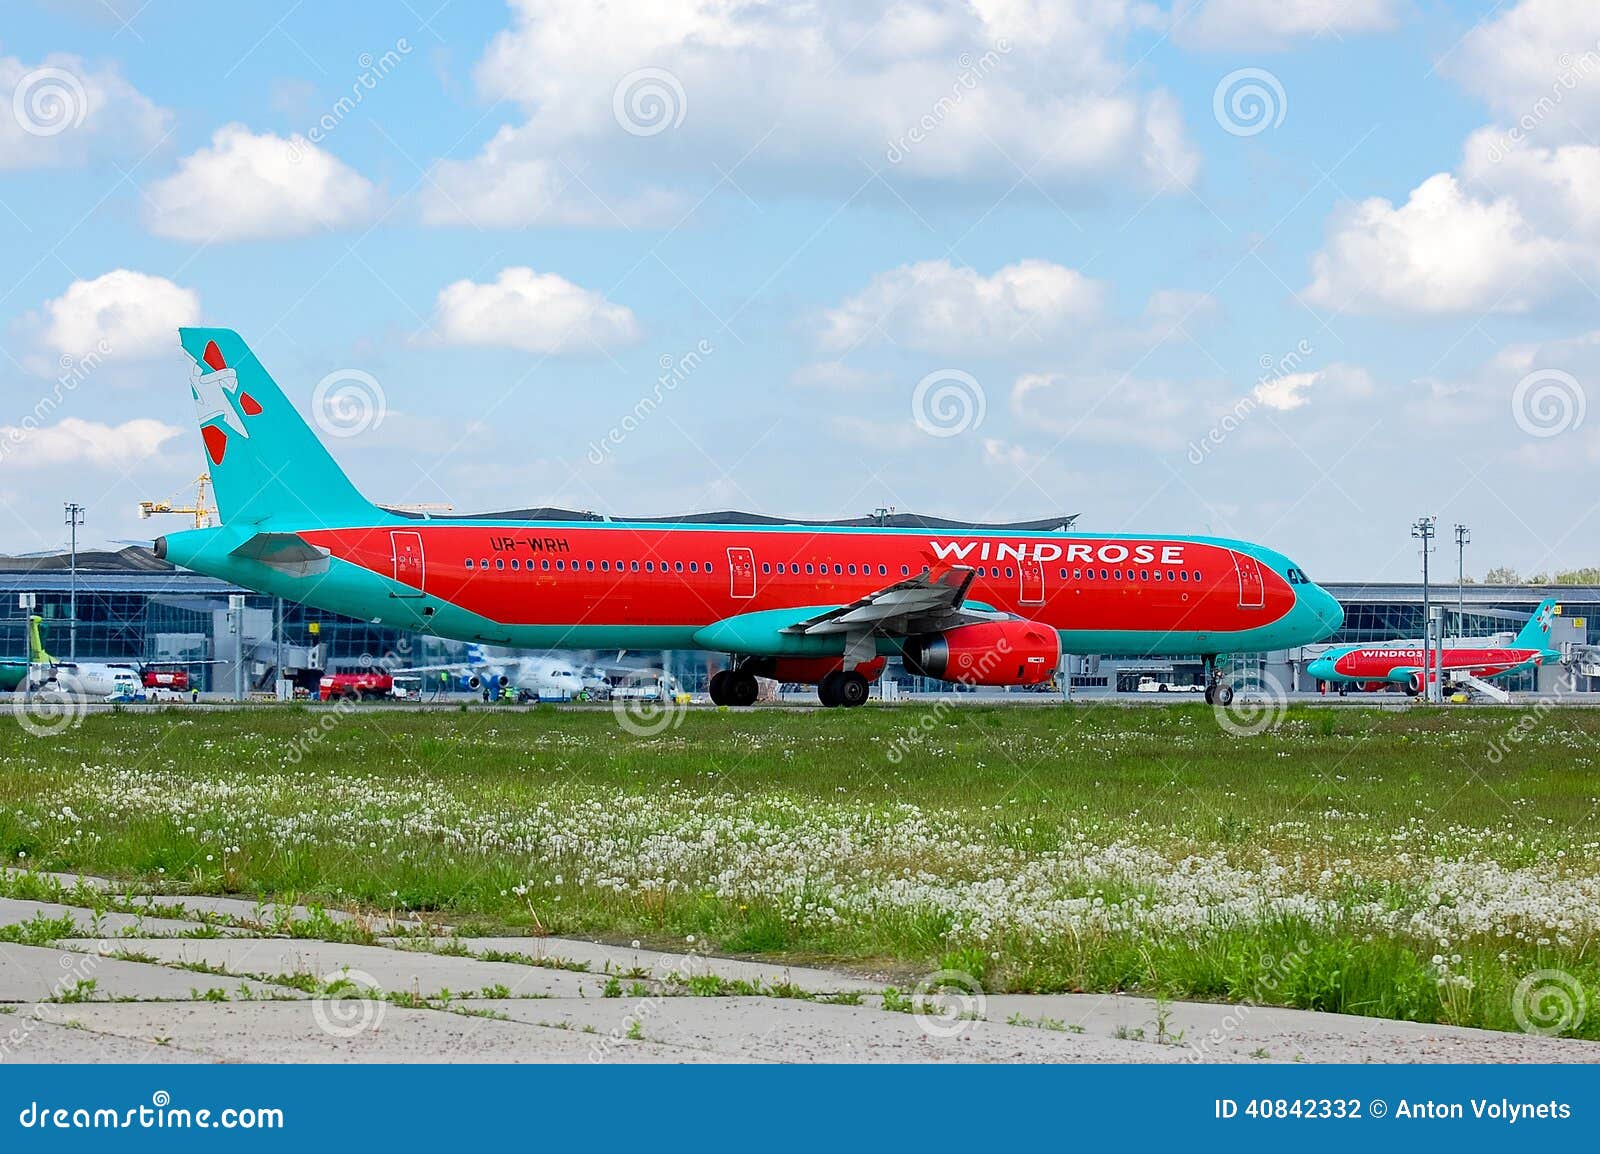 Vent Rose Aviation Airbus A321. Enroulez Rose Aviation Airbus A321-231 - atterrissage d'UR-WRH, Ukraine, aéroport international de Boryspil, mai, 11, 2014